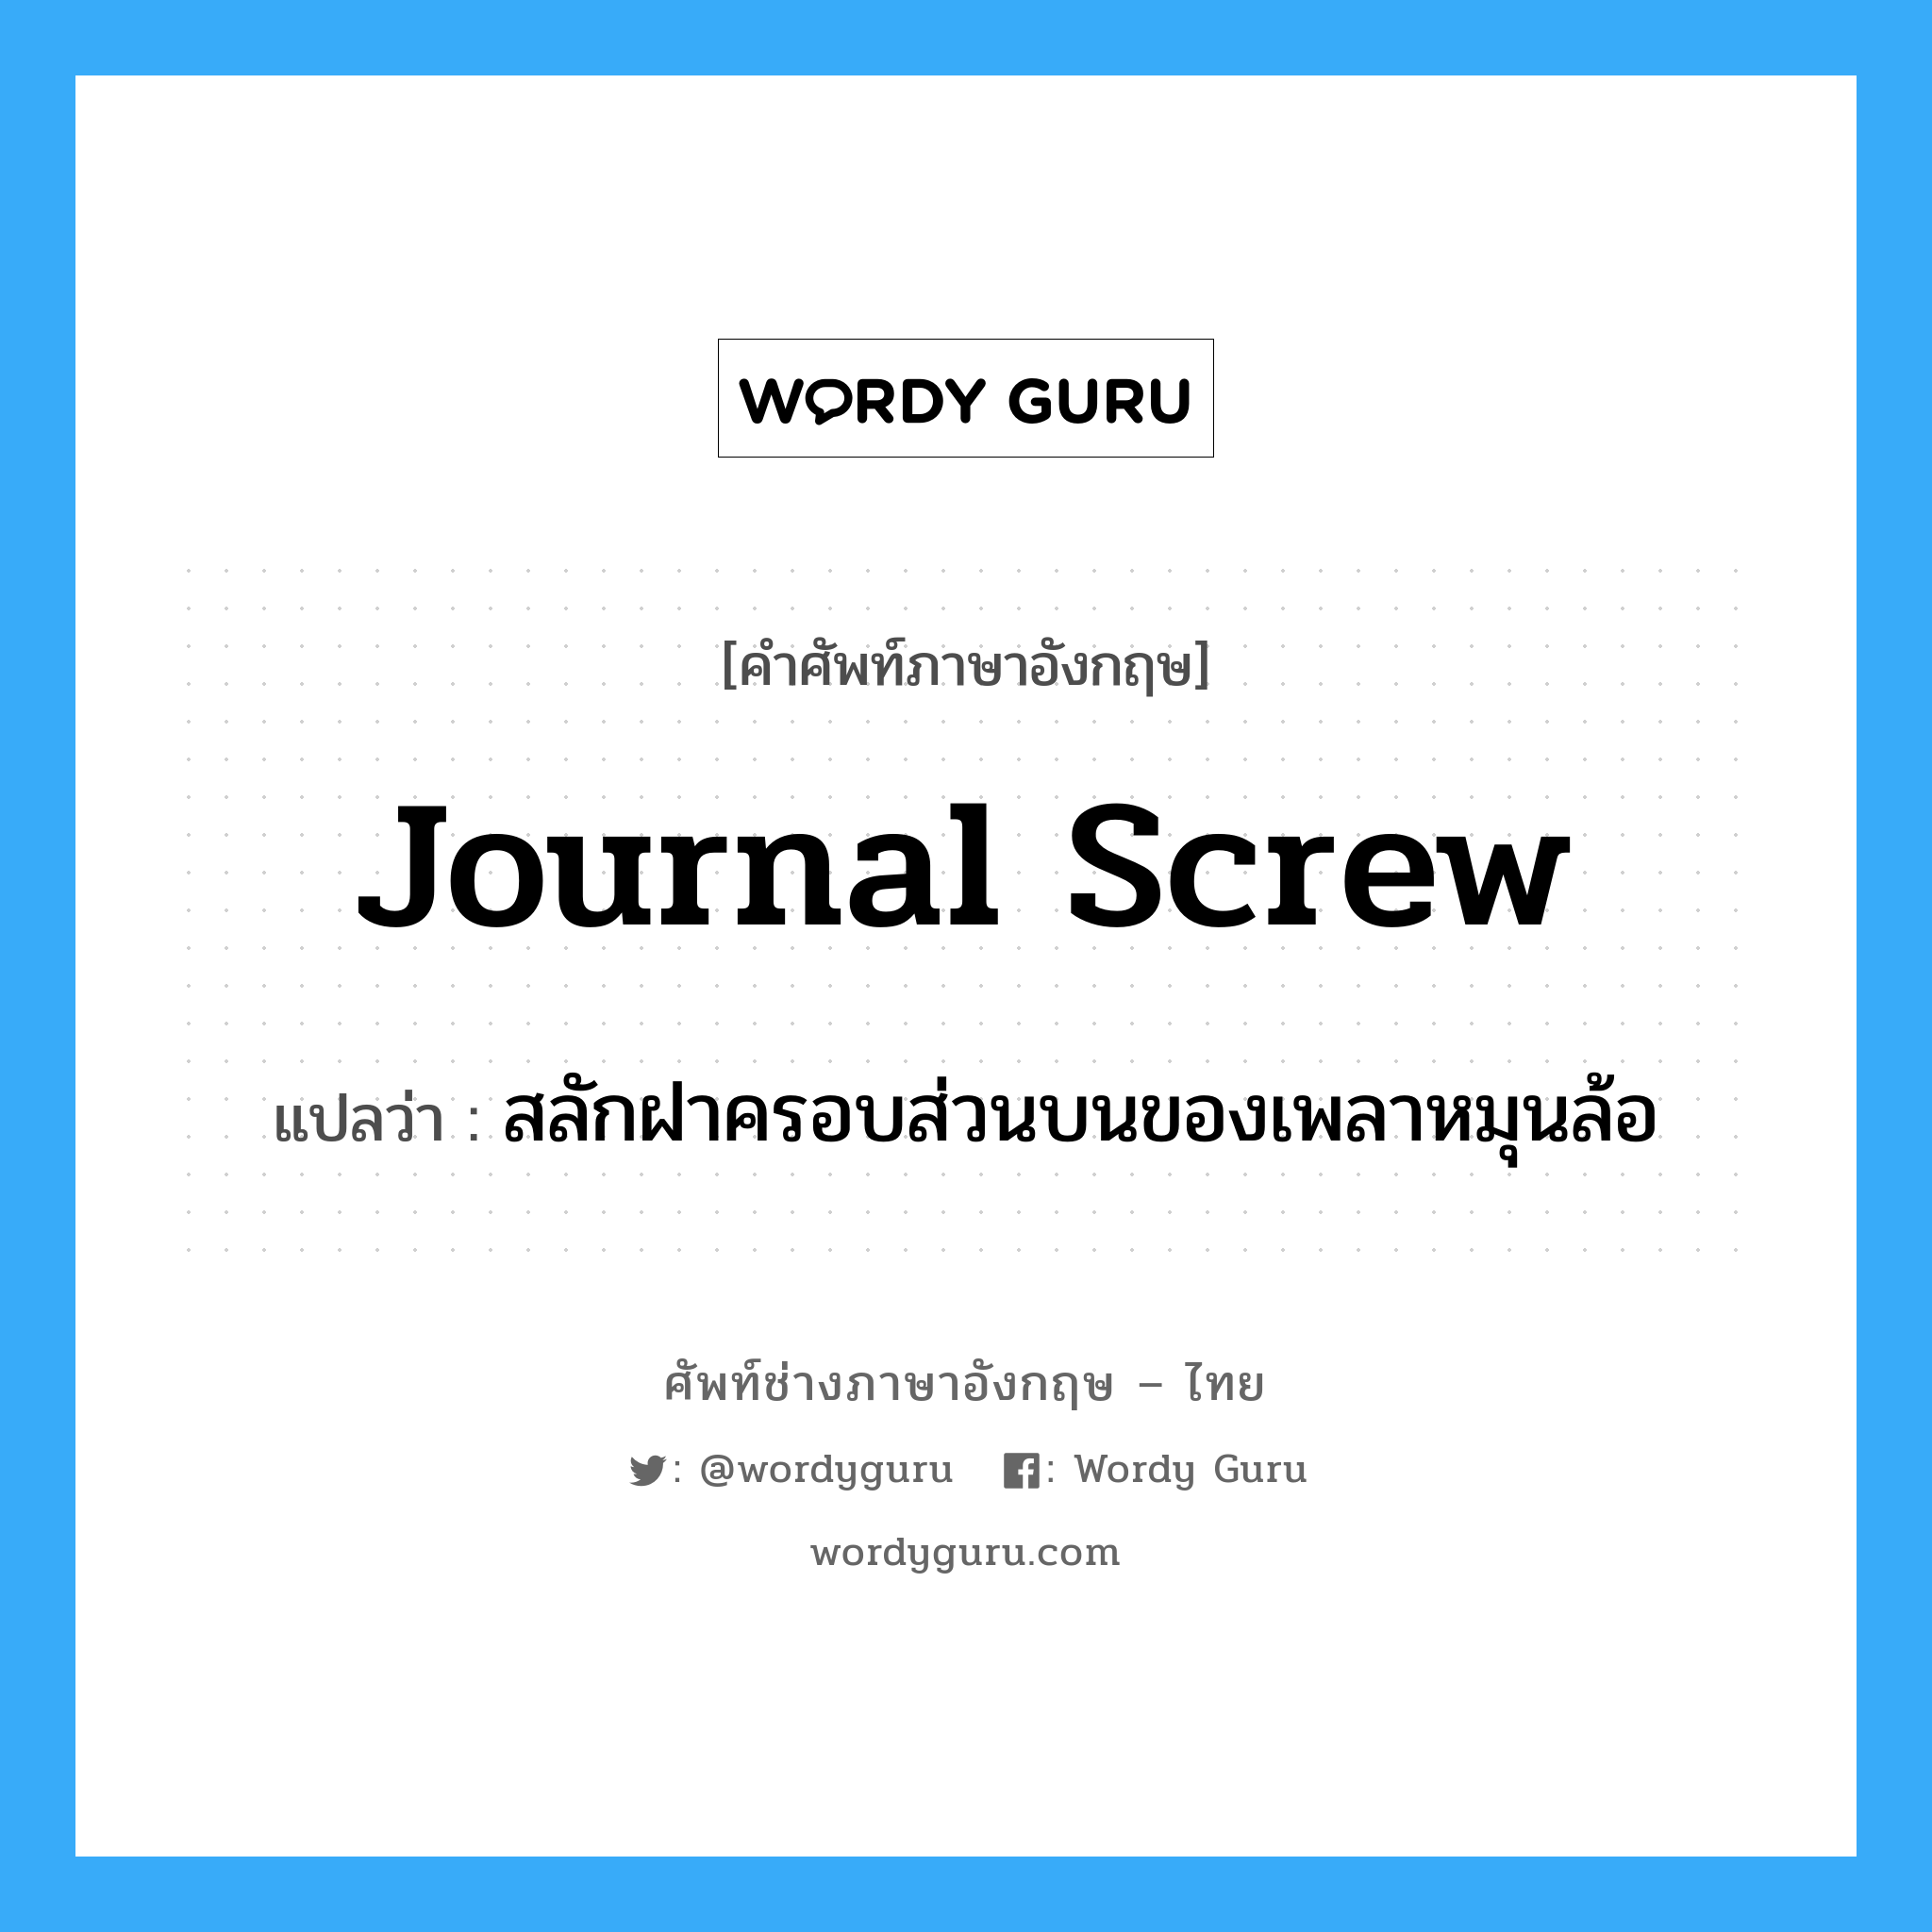 journal screw แปลว่า?, คำศัพท์ช่างภาษาอังกฤษ - ไทย journal screw คำศัพท์ภาษาอังกฤษ journal screw แปลว่า สลักฝาครอบส่วนบนของเพลาหมุนล้อ